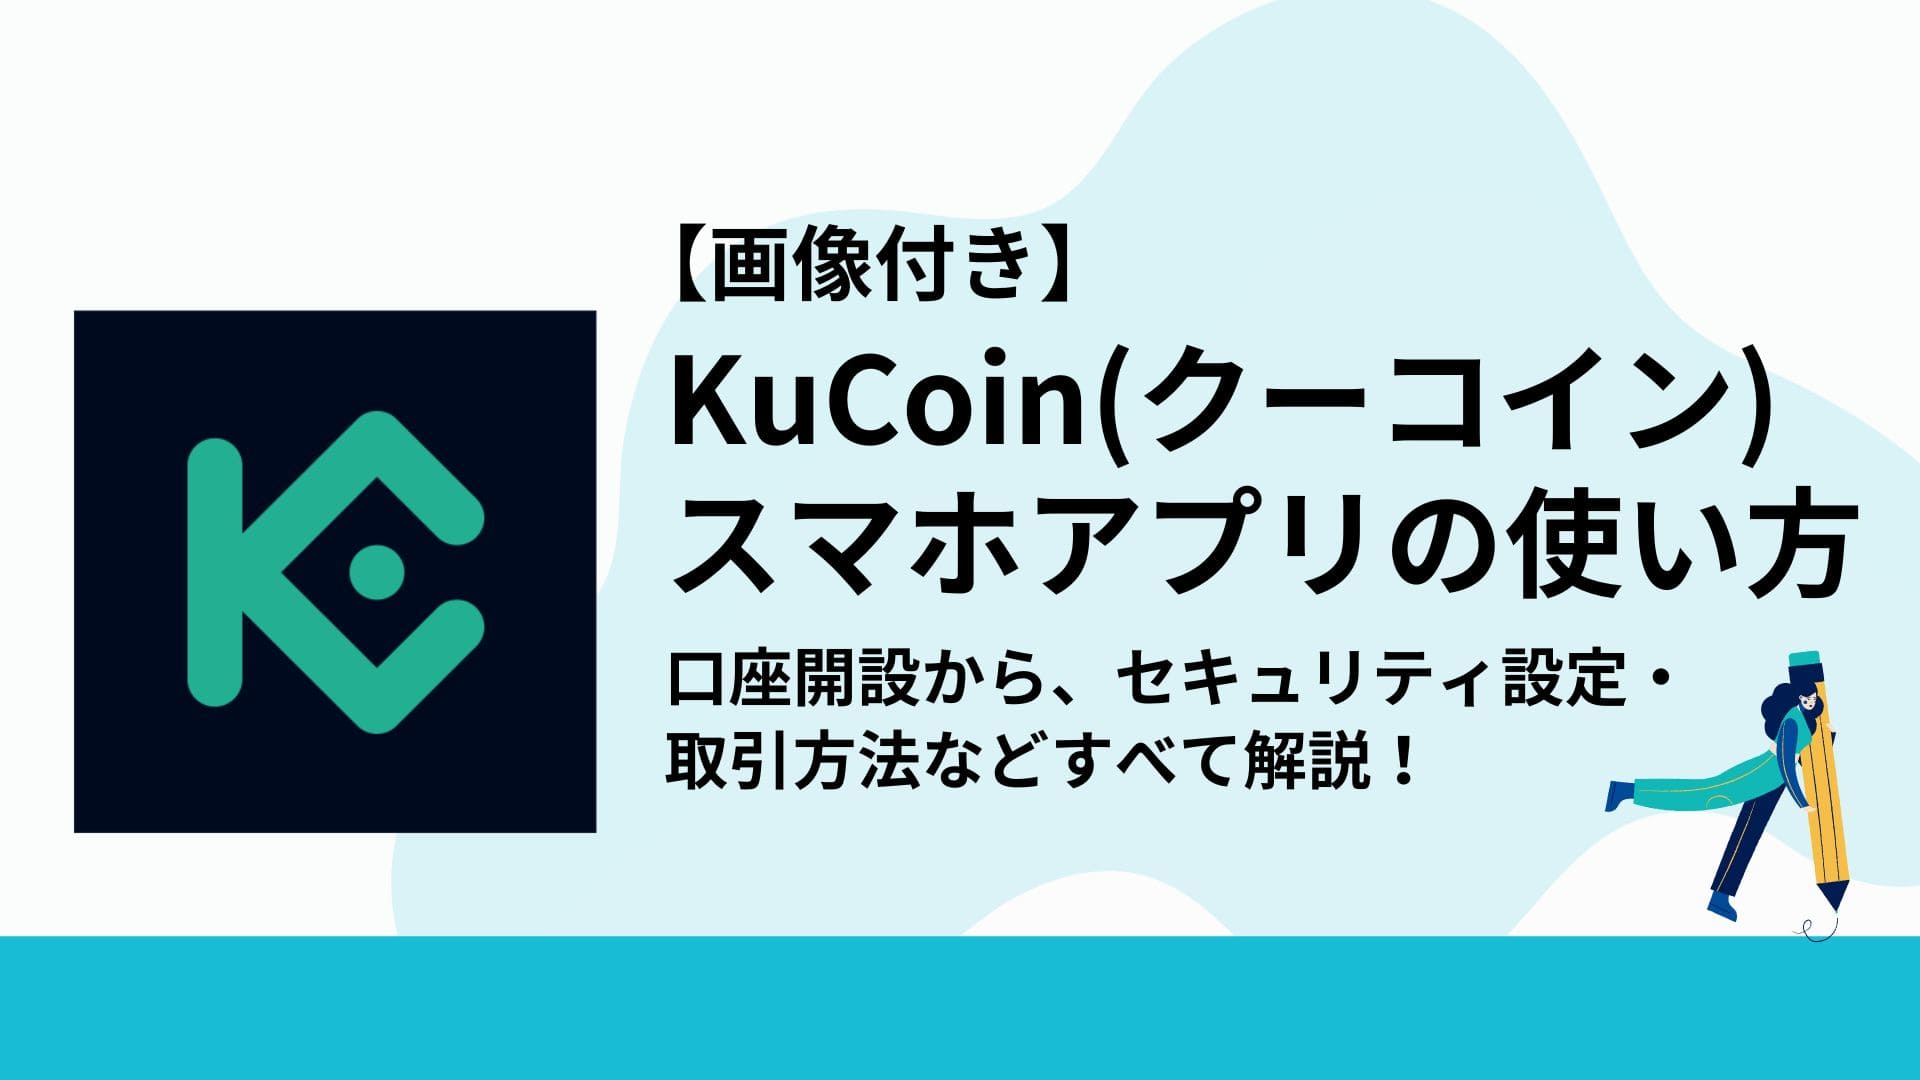 KuCoin_スマホアプリ使い方_アイキャッチ